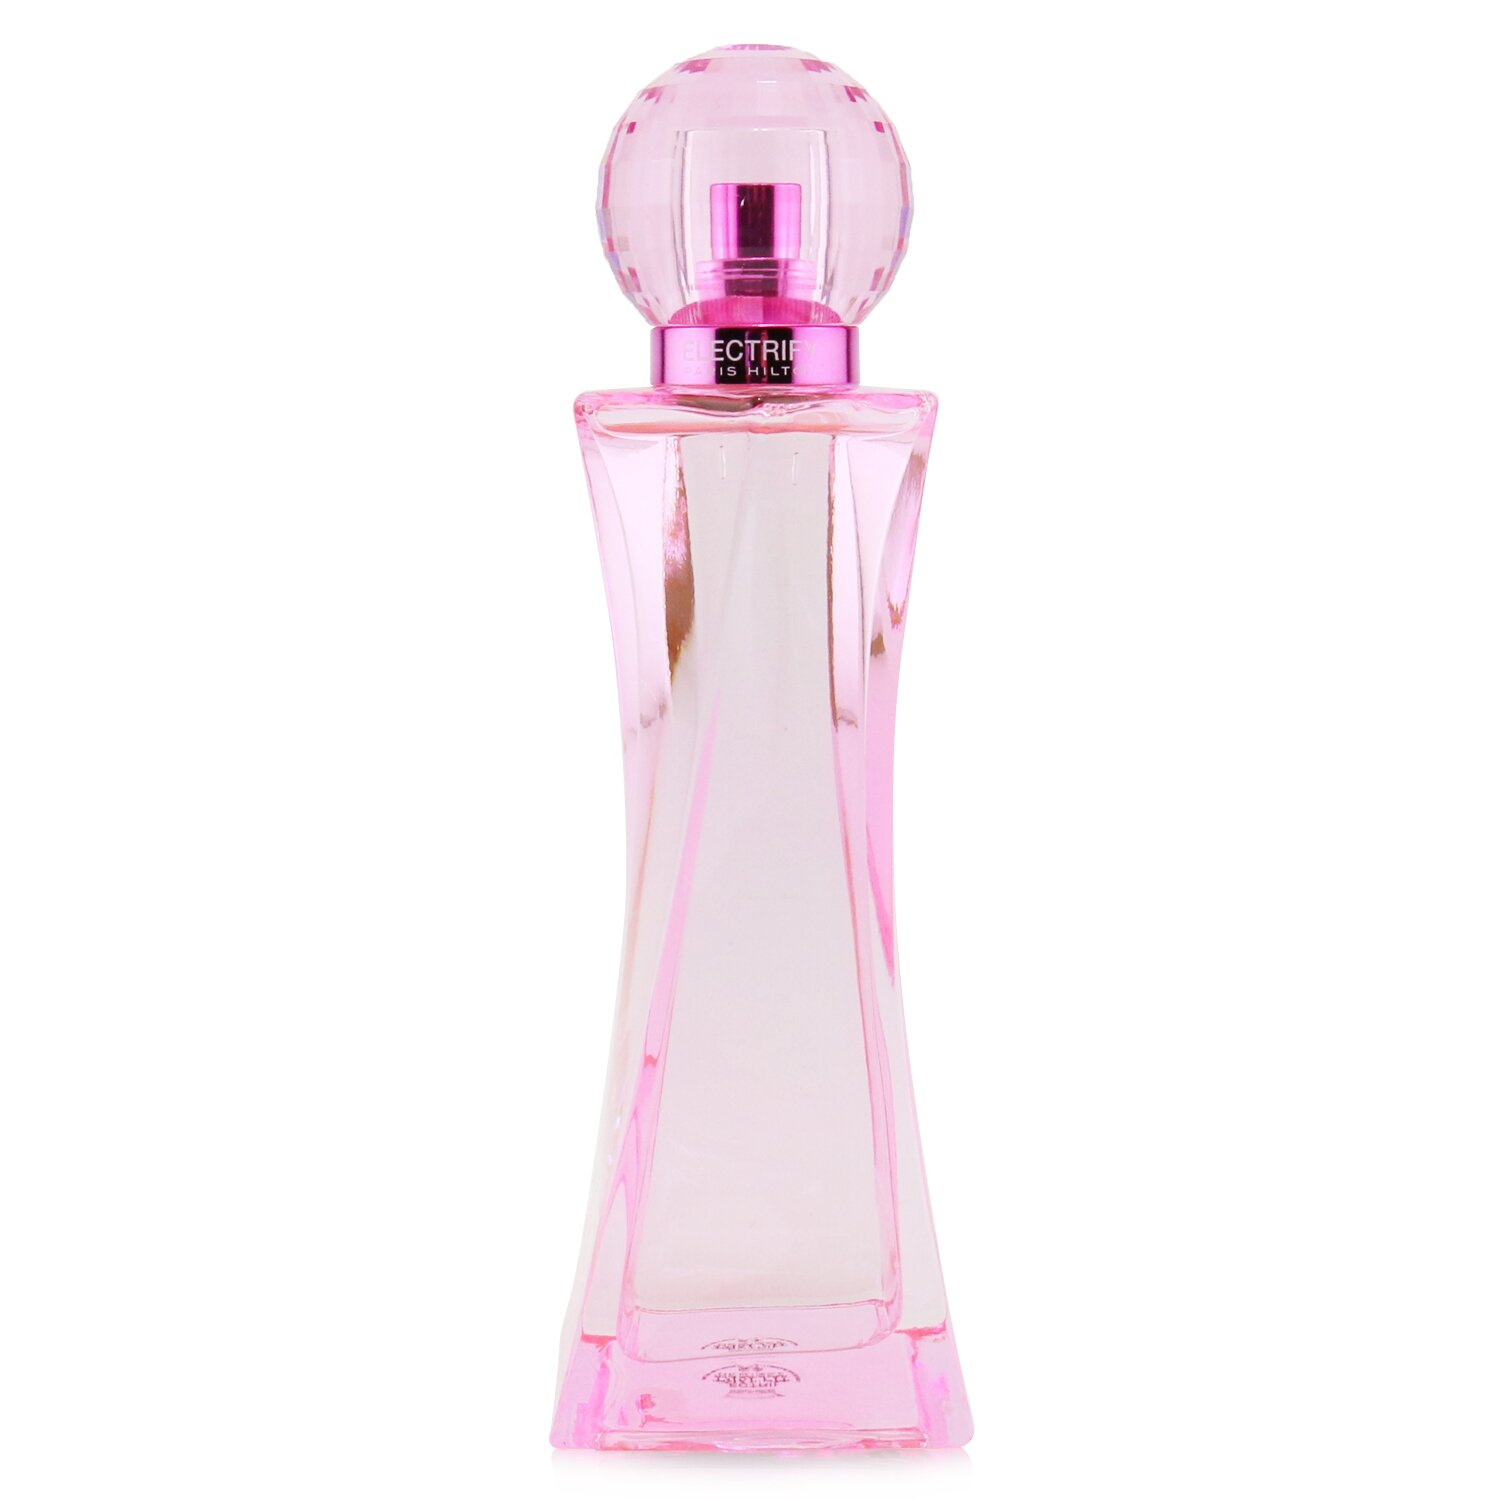 Paris Hilton Electrify Eau De Parfum Spray 100ml/3.4oz